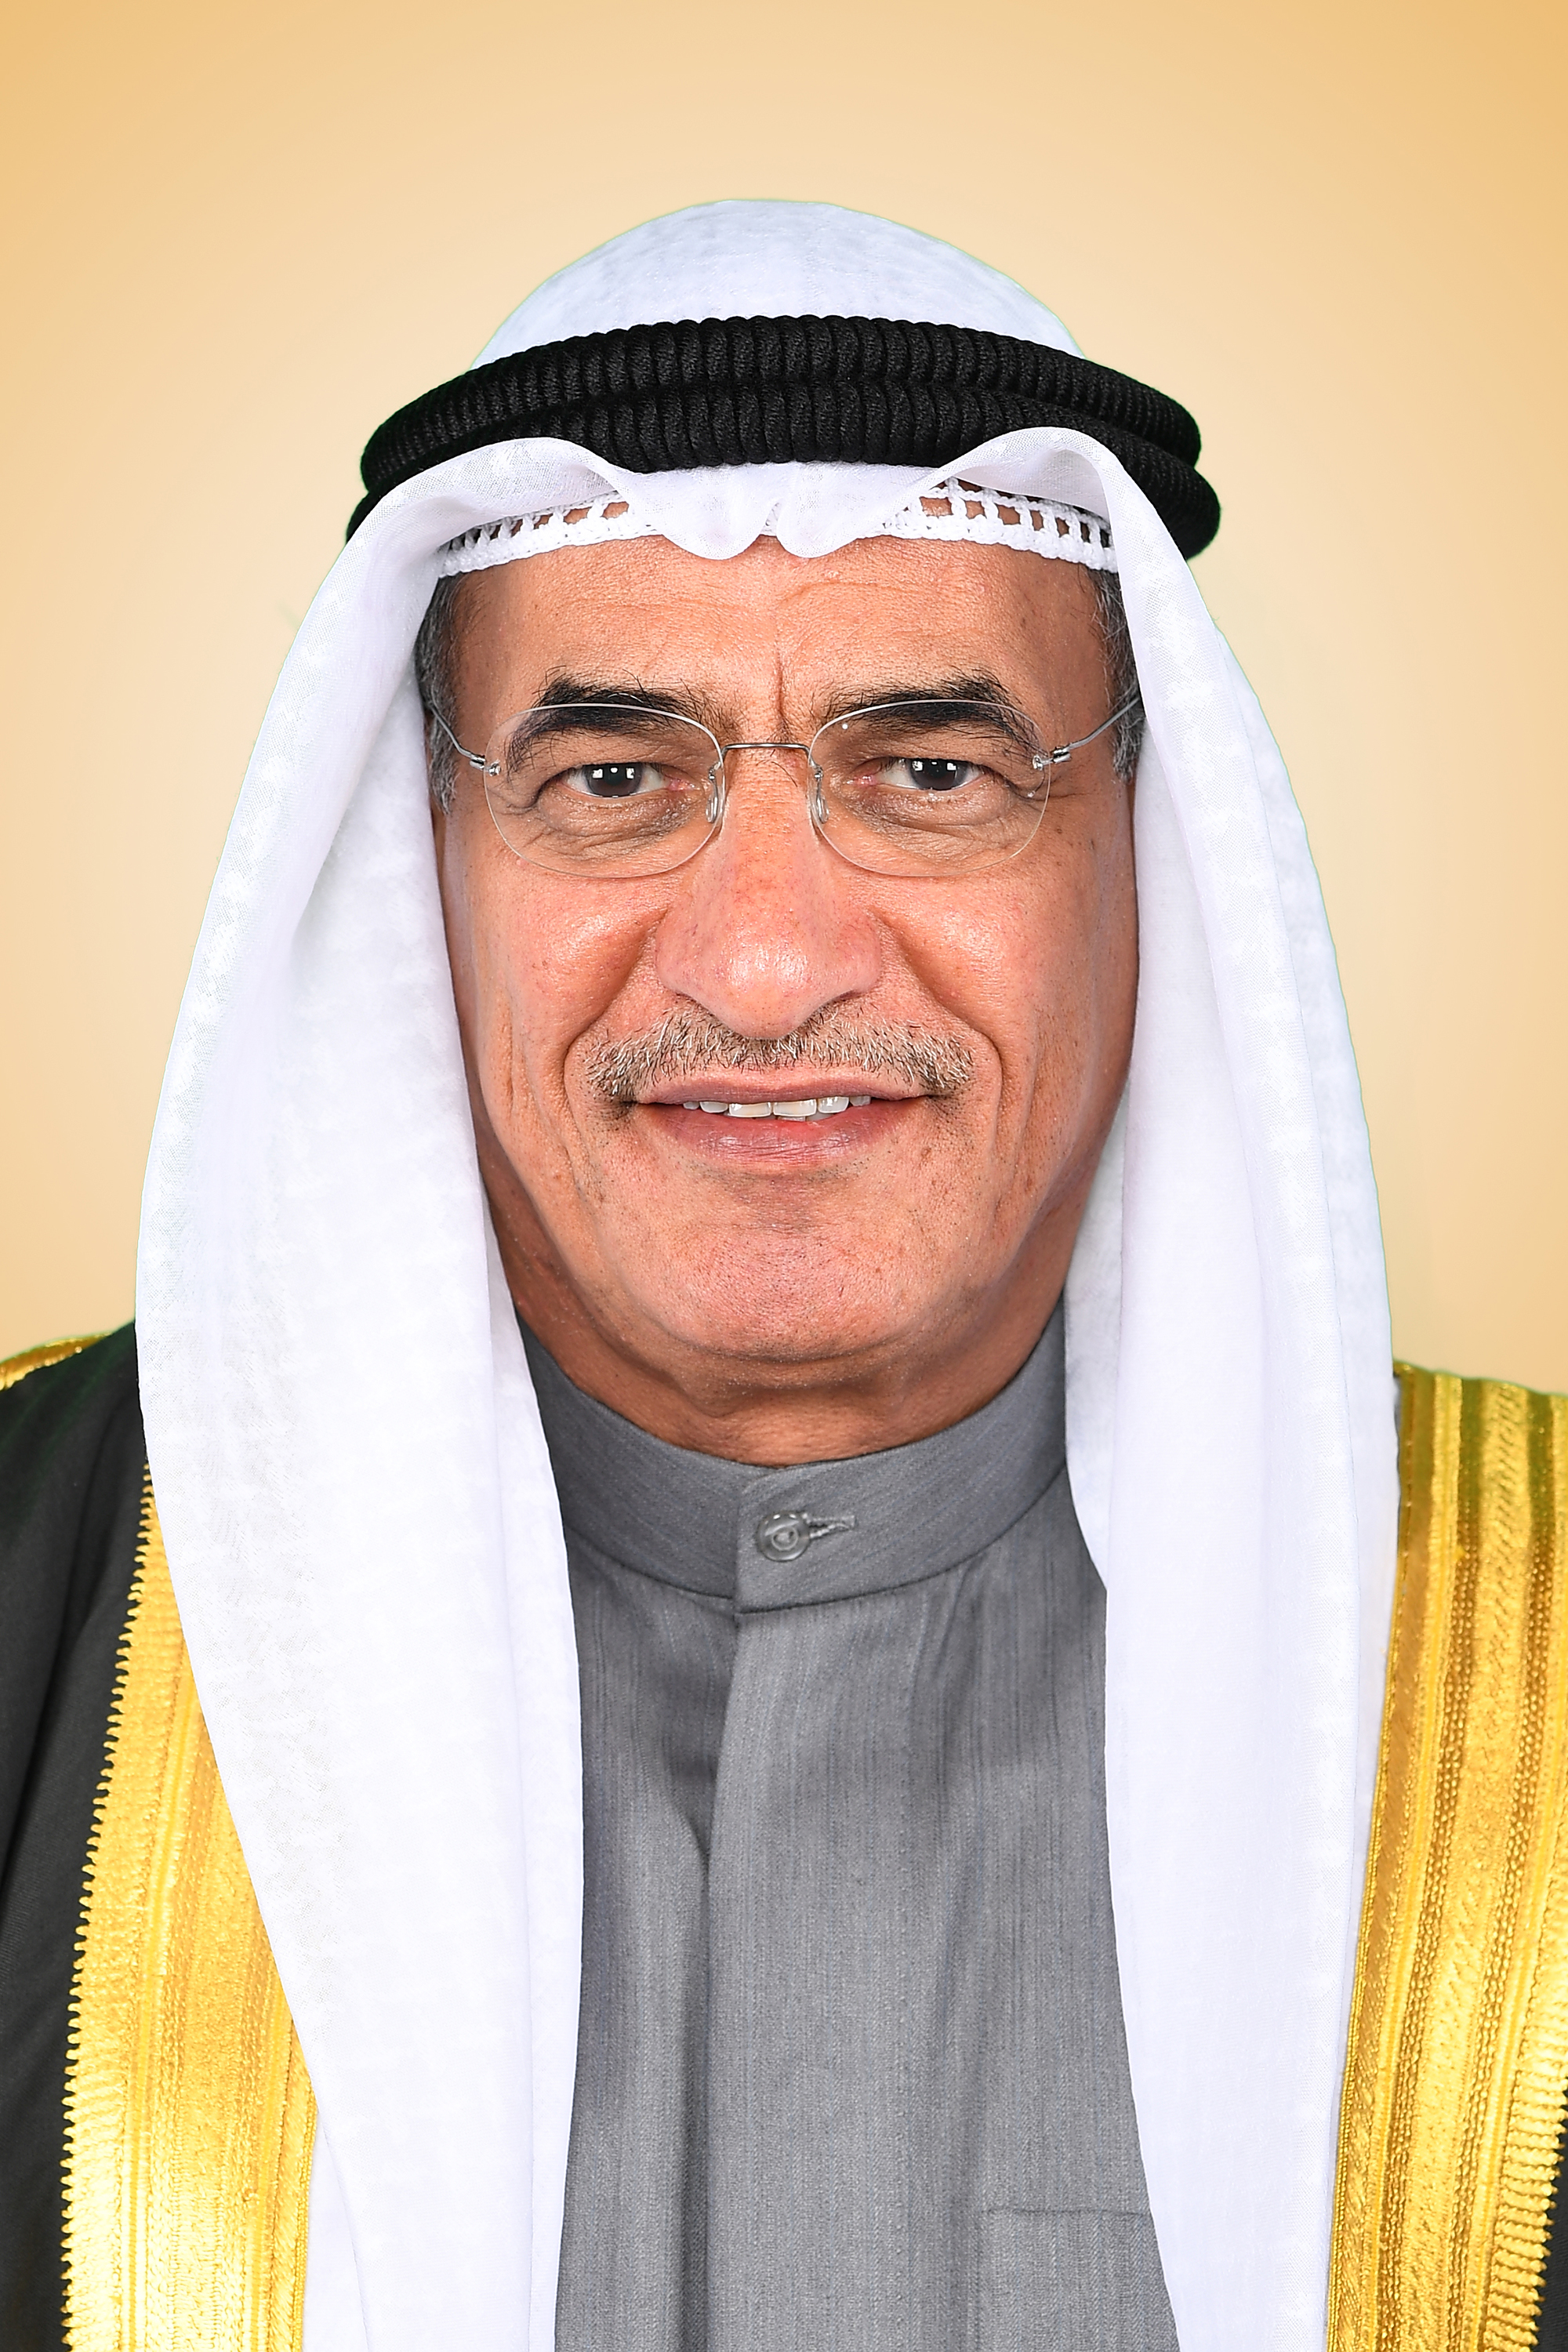 وزير النفط ووزير الكهرباء والماء رئيس مجلس إدارة مؤسسة البترول الكويتية بخيت الرشيدي